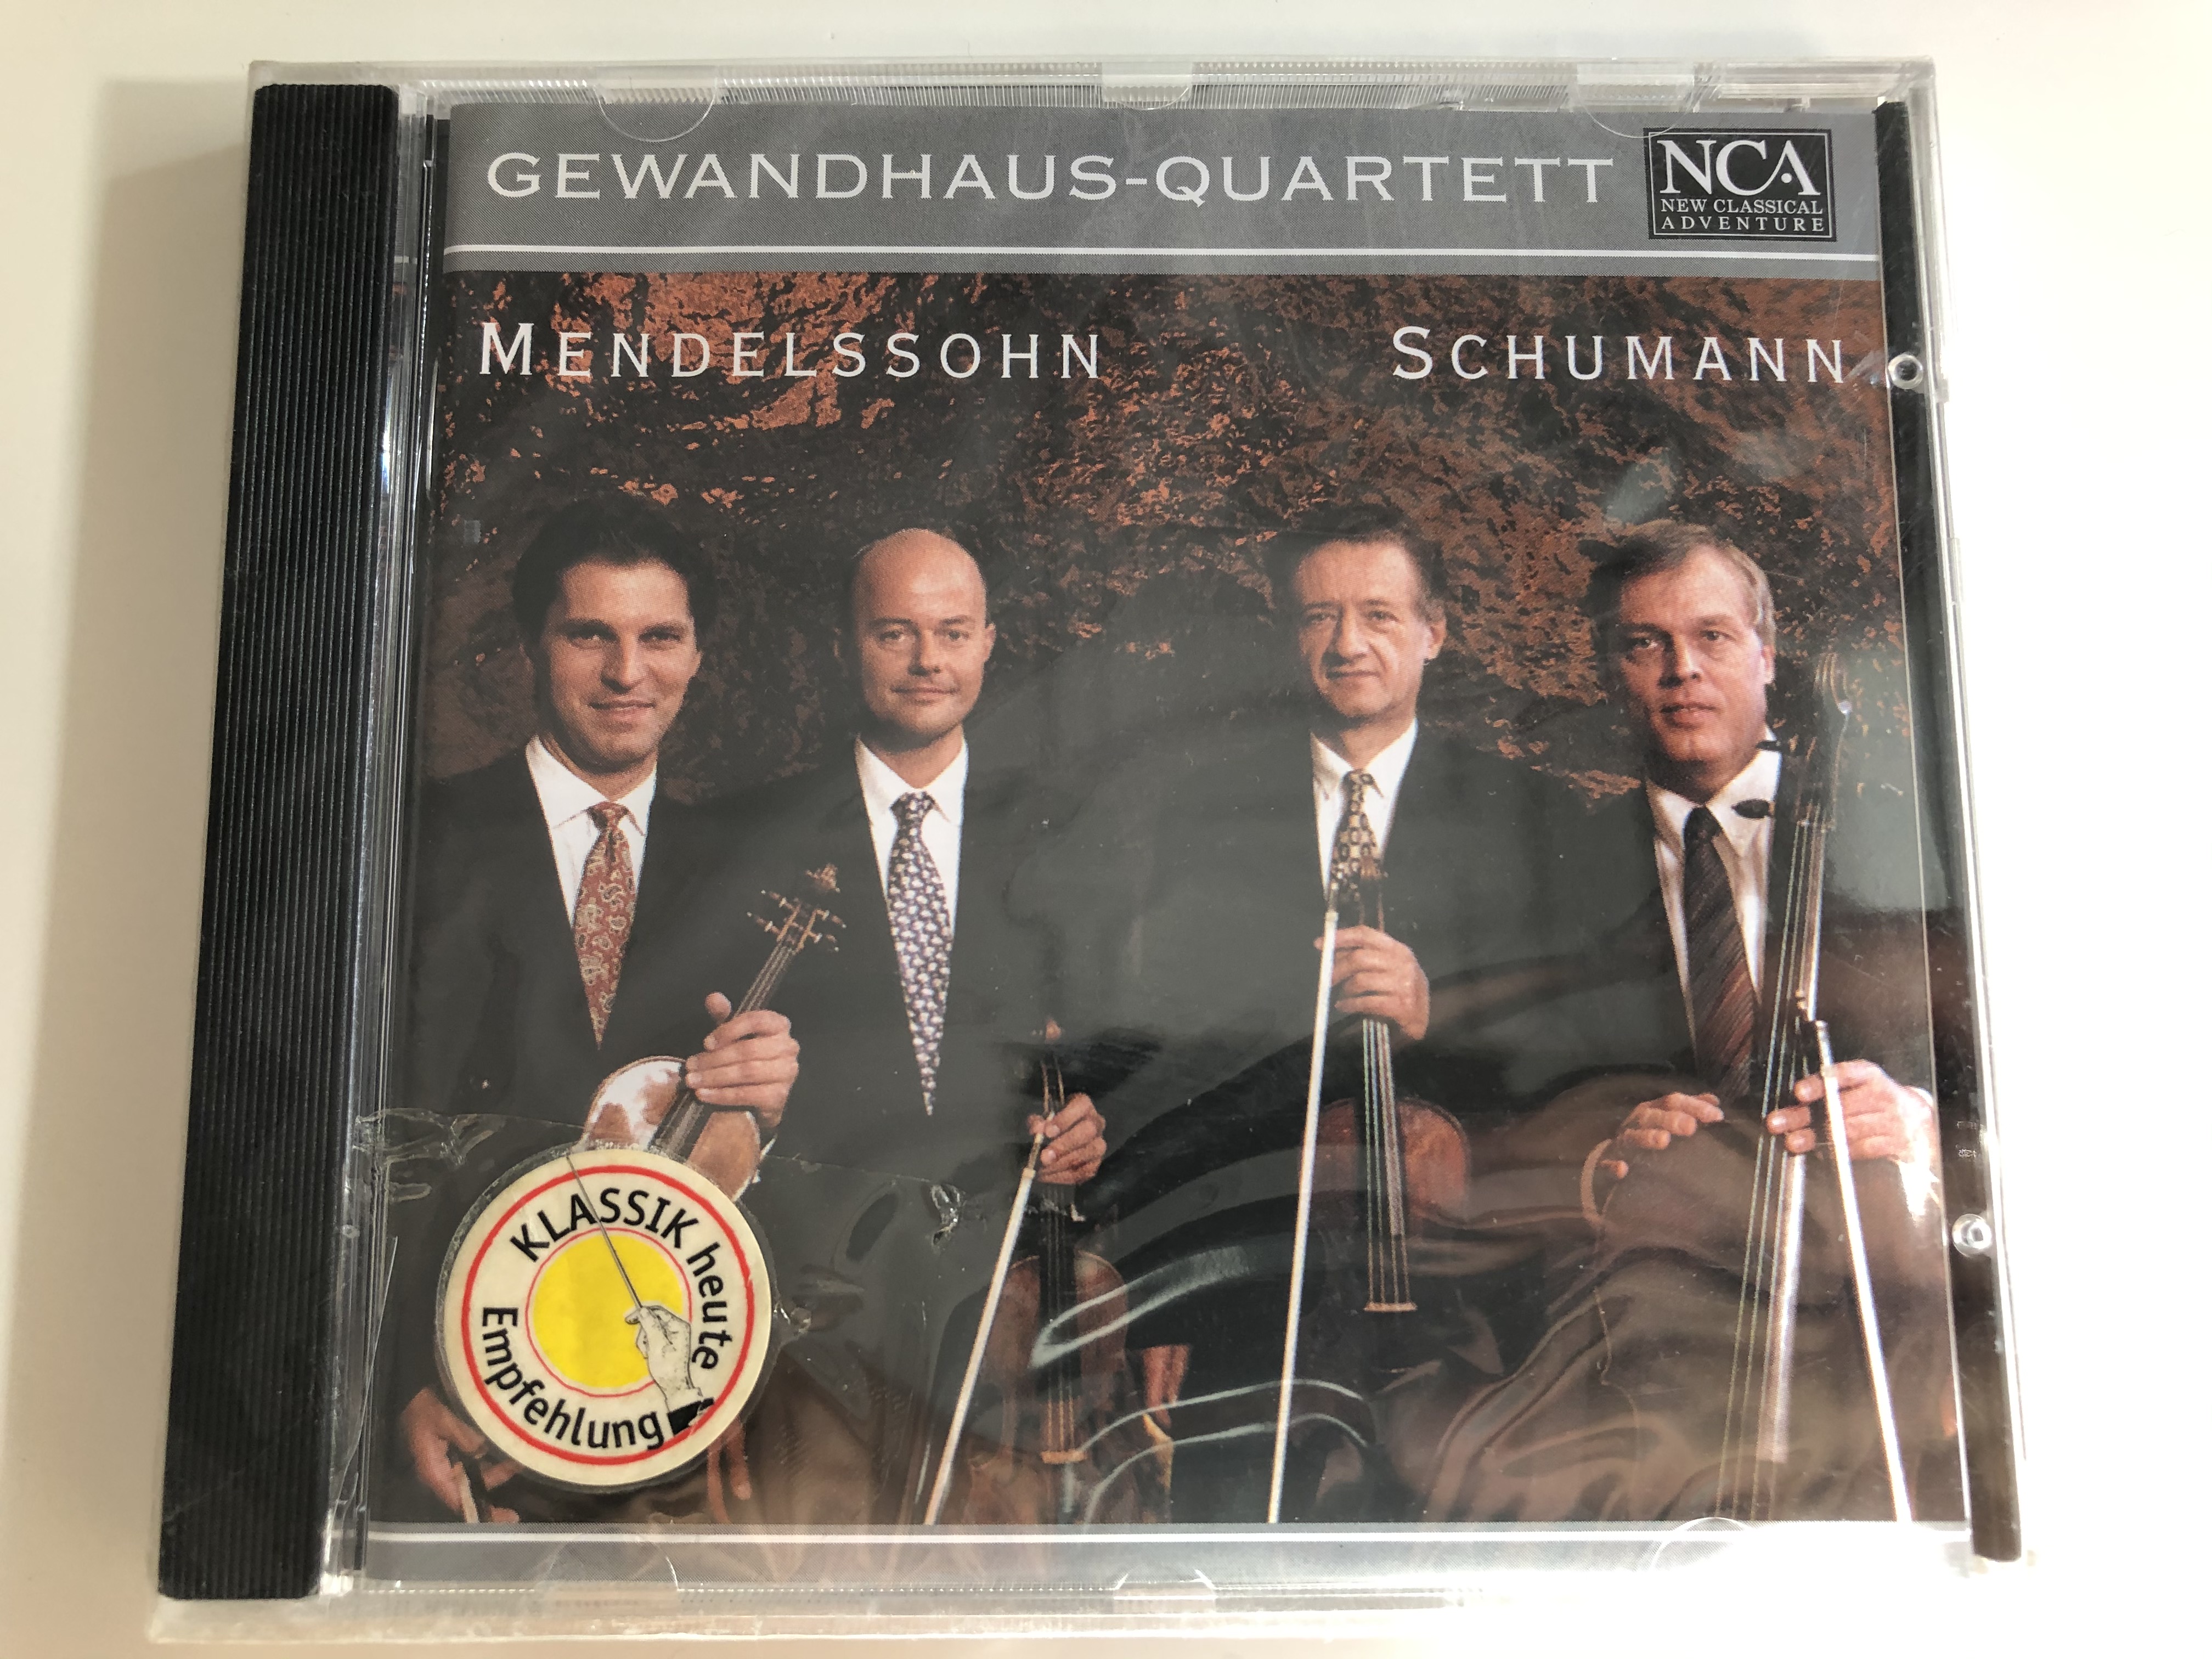 gewandhaus-quartett-mendelssohn-schumann-new-classical-adventure-audio-cd-2000-60108-215-1-.jpg